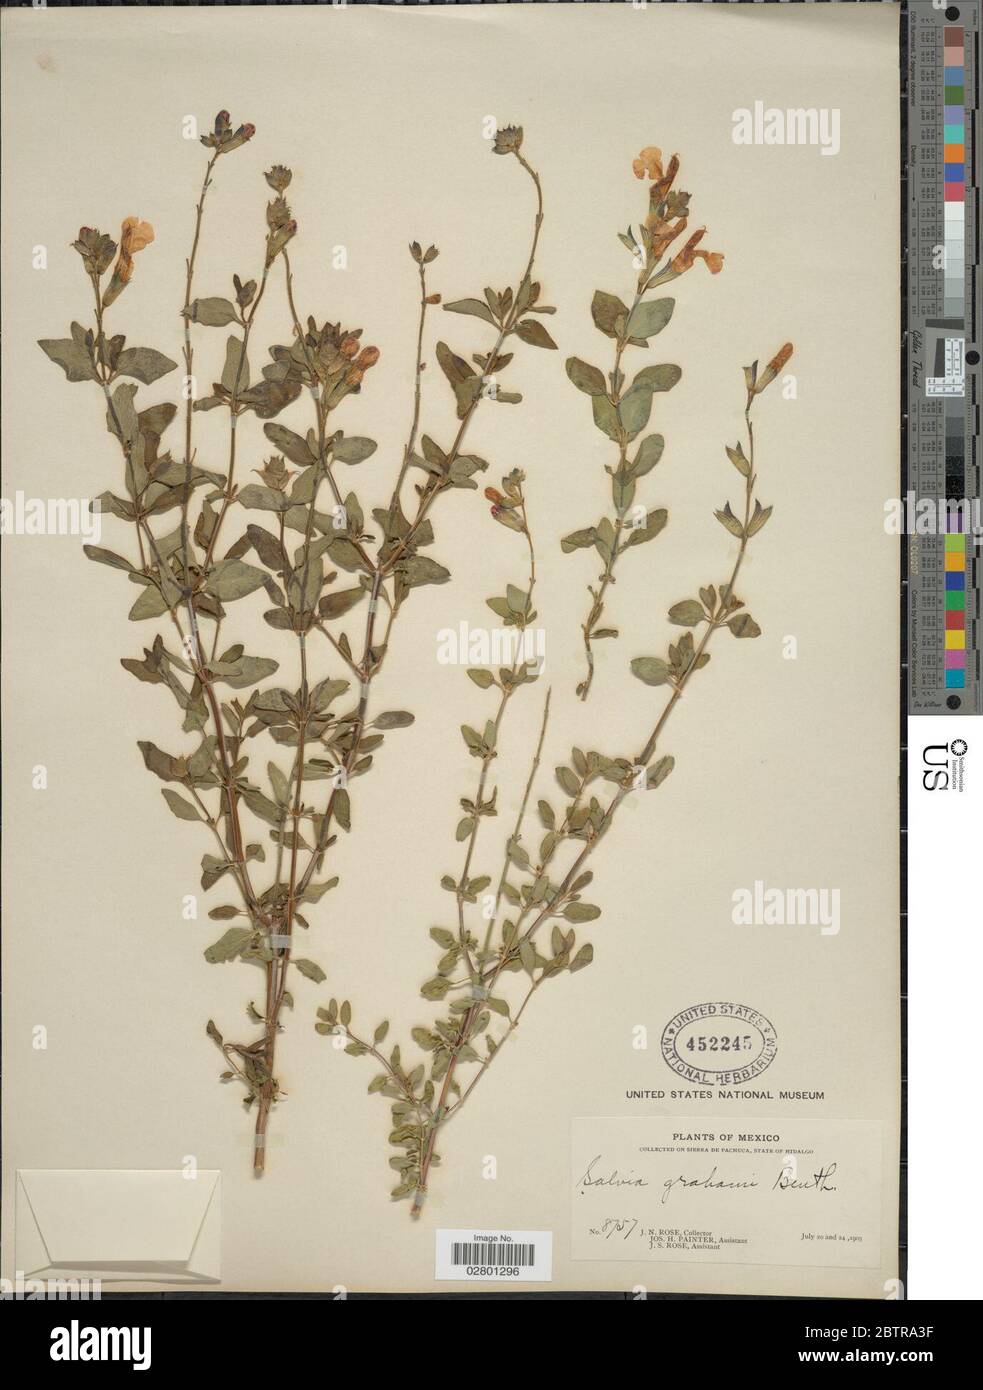 Salvia grahami Benth. Stock Photo